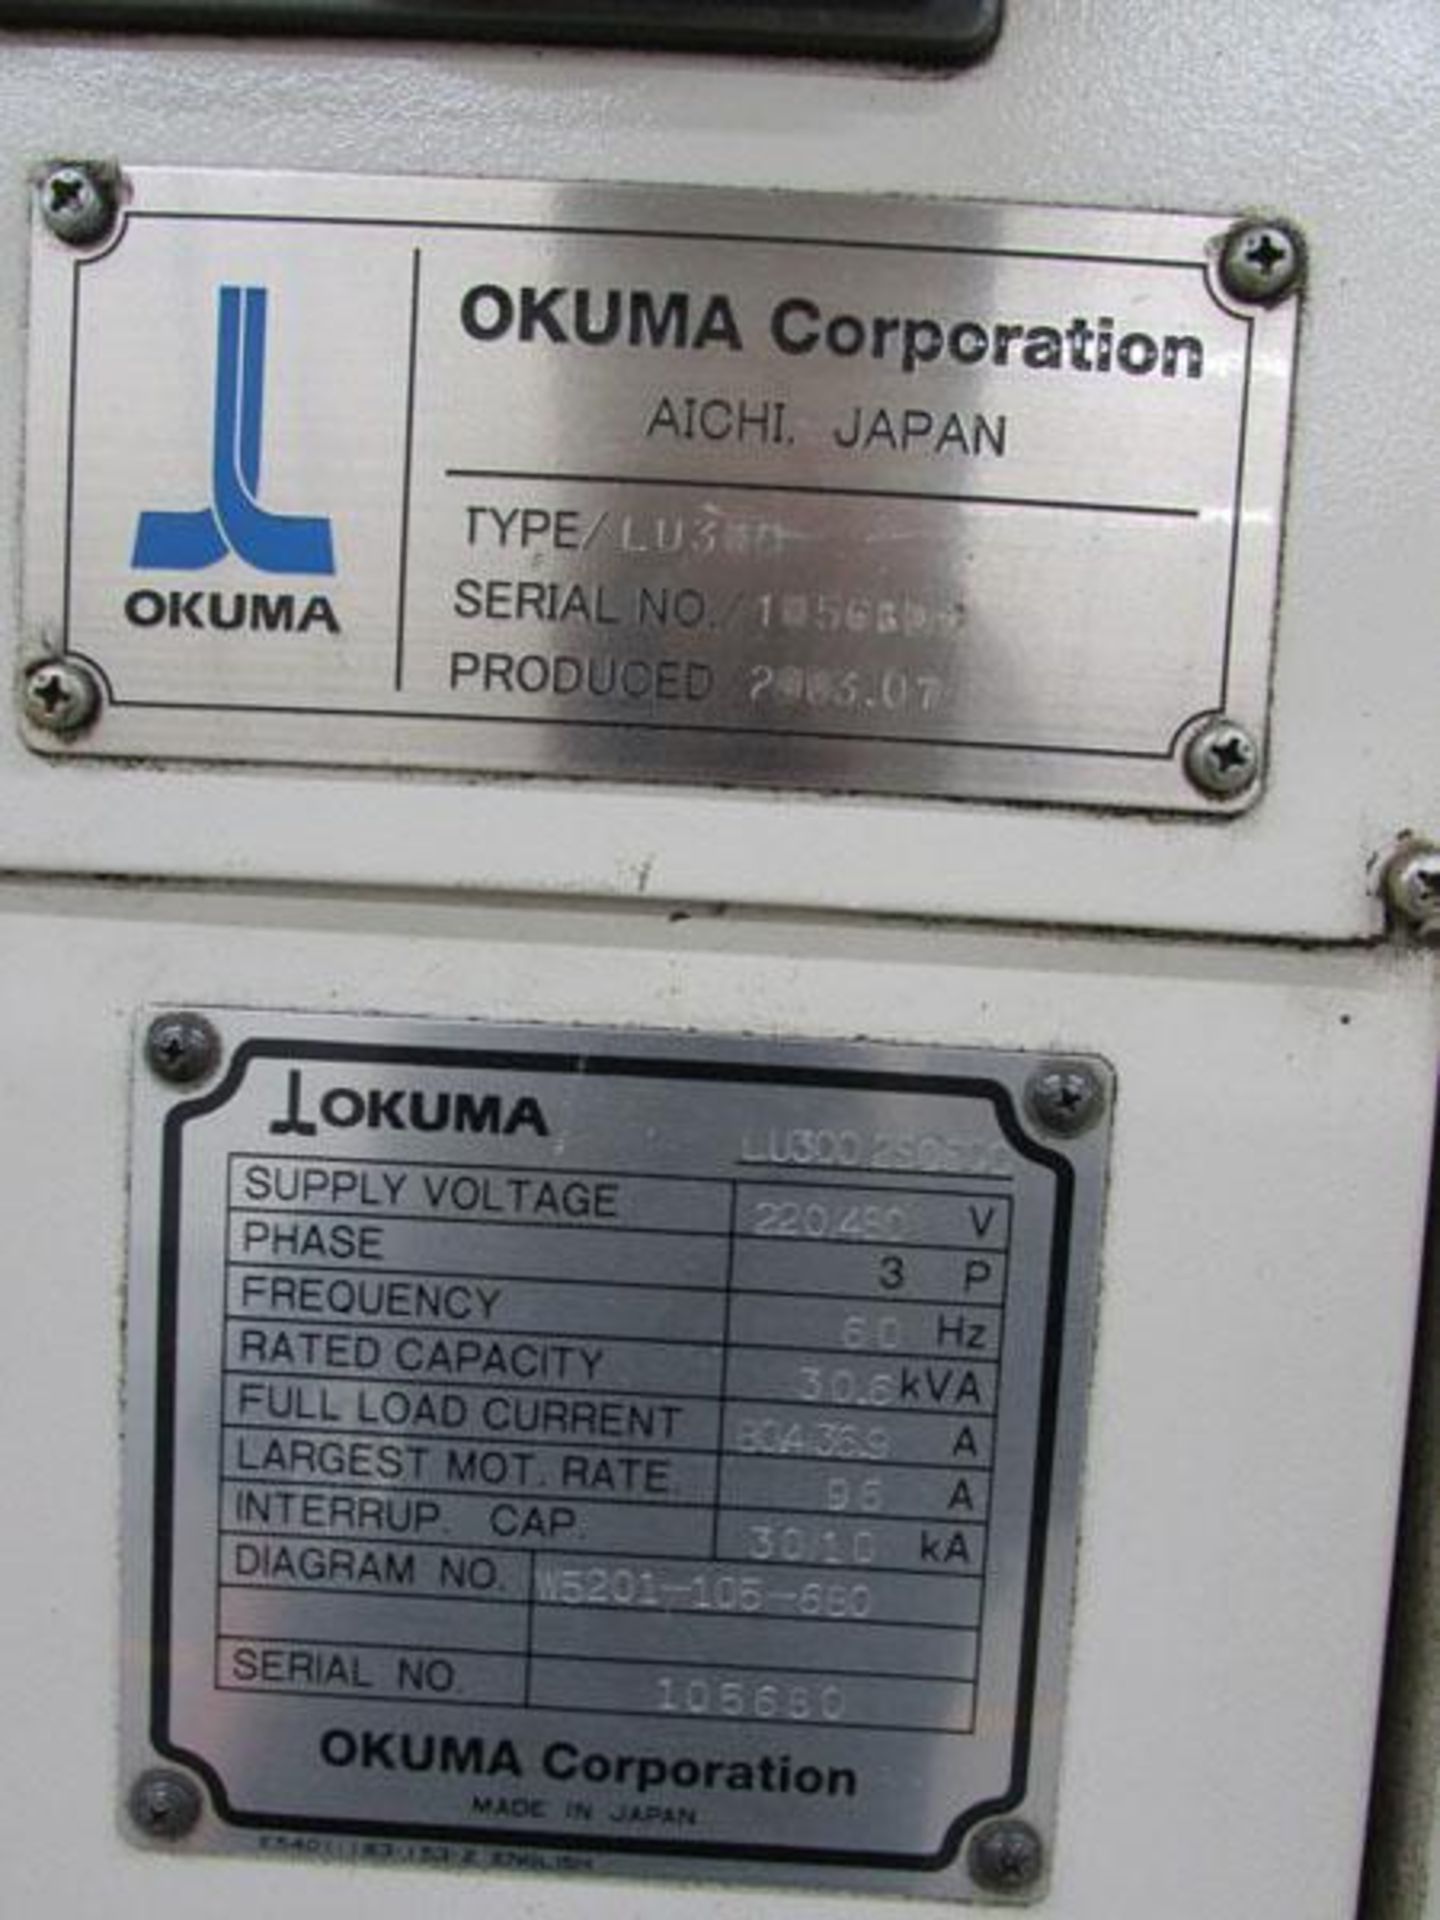 2003 Okuma Simul Turn LU300 2SC600 Twin Turret CNC Horizontal Turning Center - Image 13 of 13